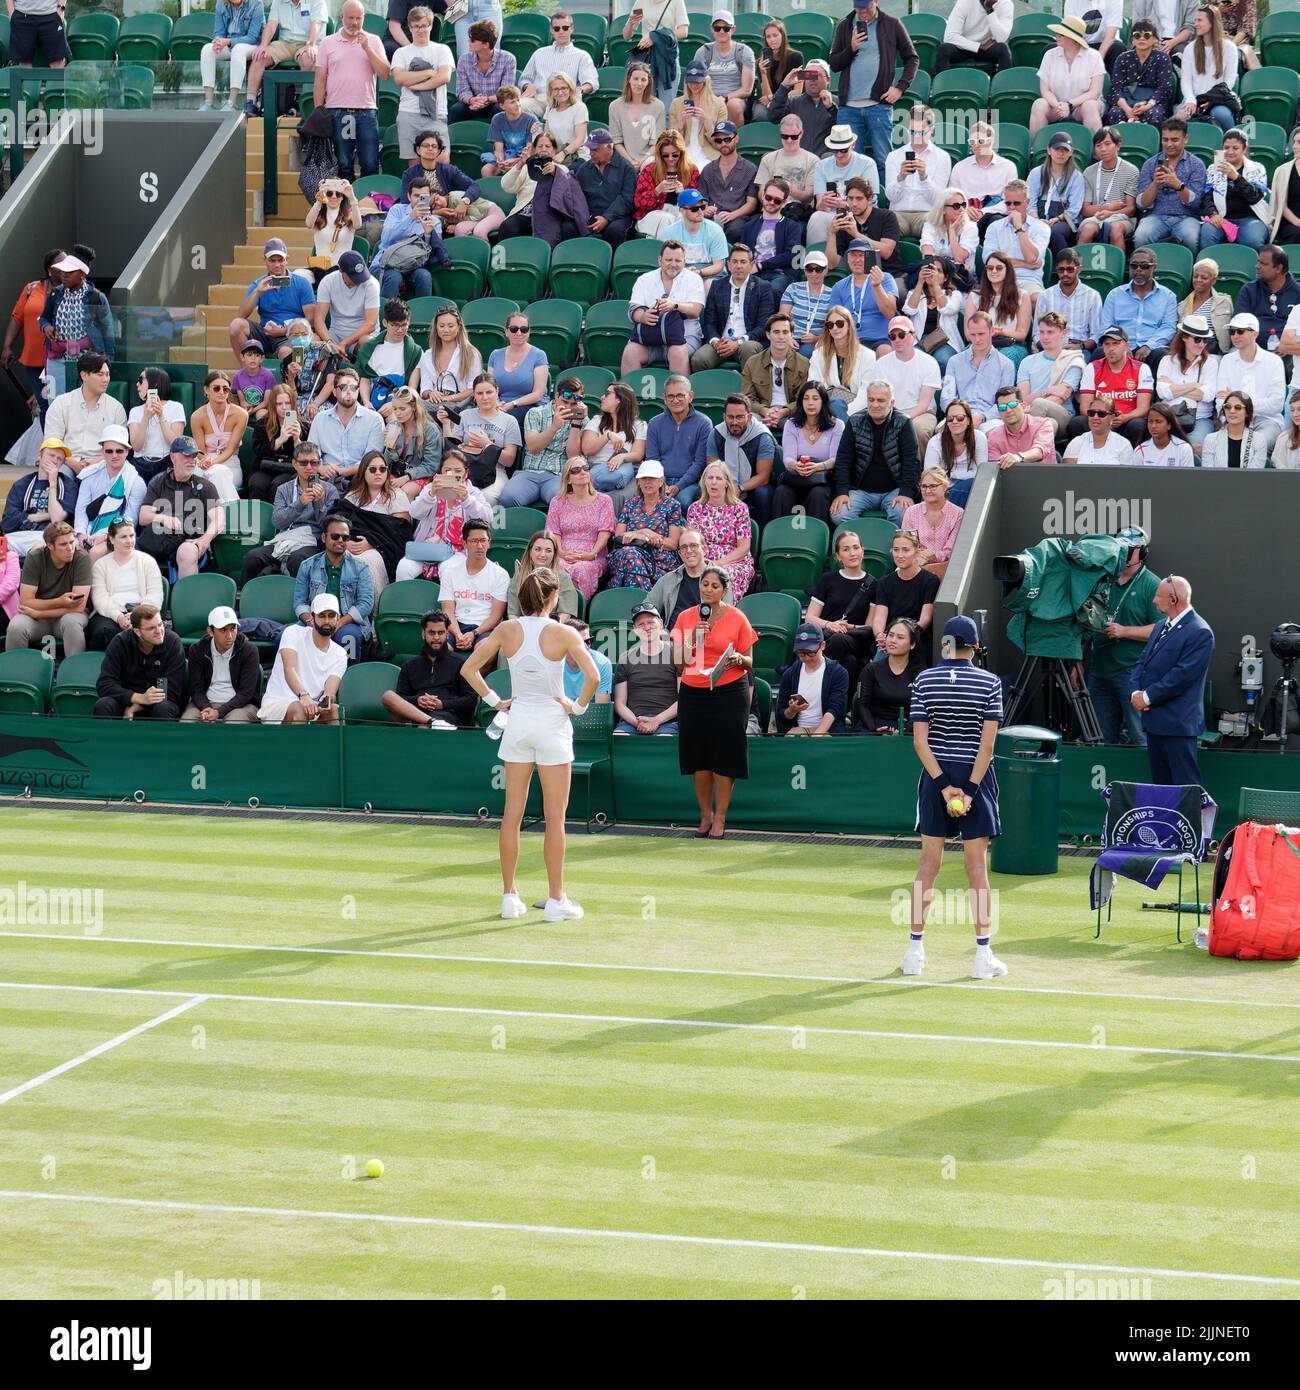 Wimbledon, Greater London, England, July 02 2022: Wimbledon Tennis Championship. Croatian Petra Martic being interviewed after winning her match. Stock Photo